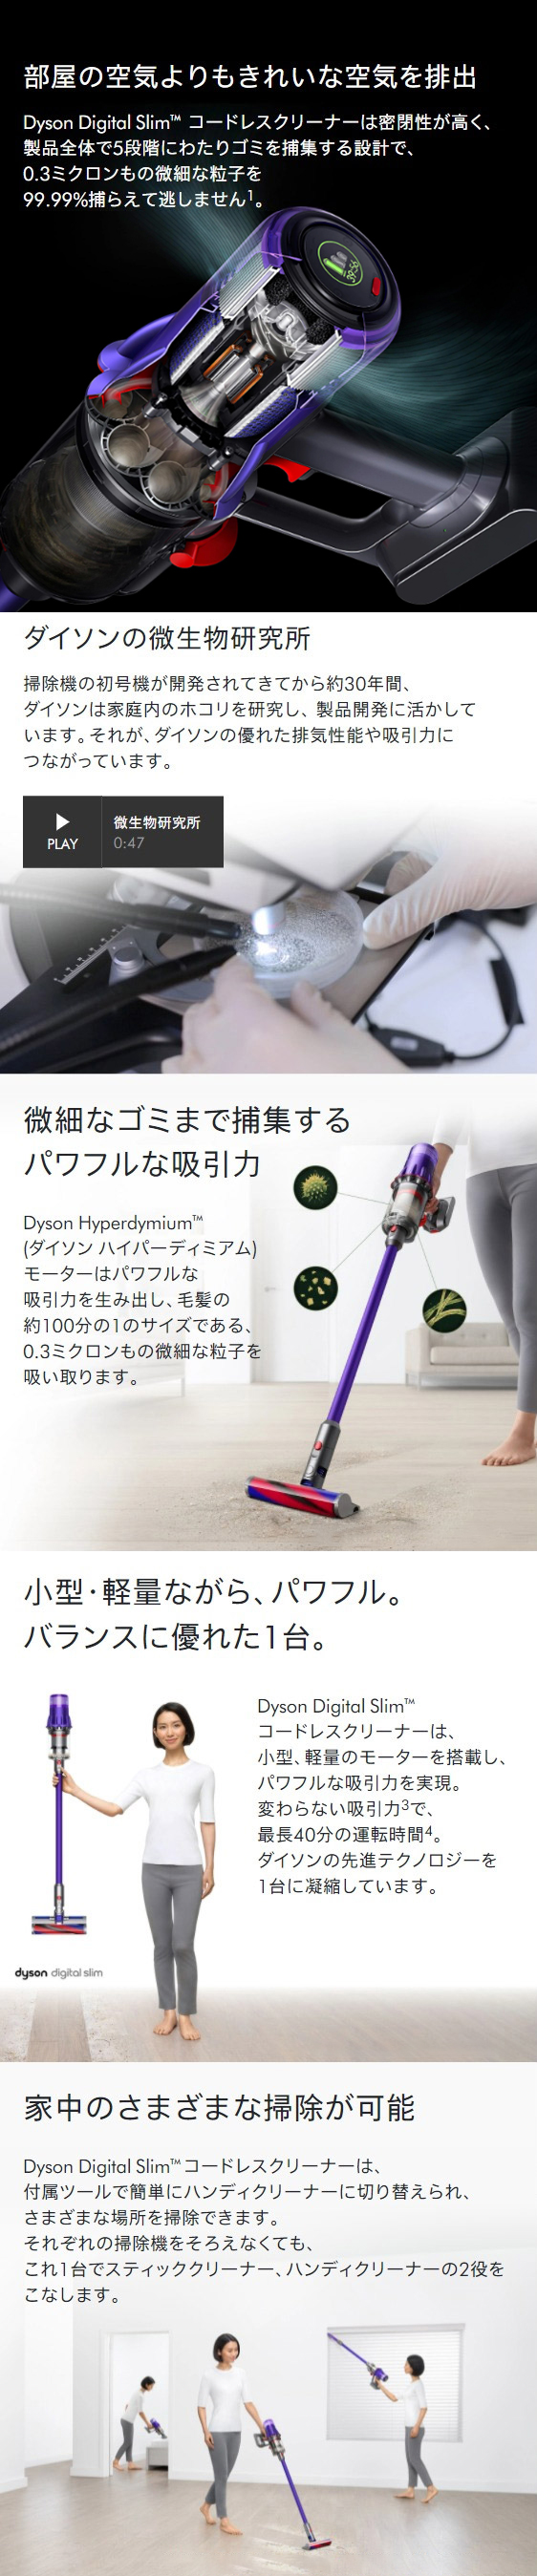 掃除機 コードレス掃除機 【期間限定 お買得価格】 ダイソン Dyson